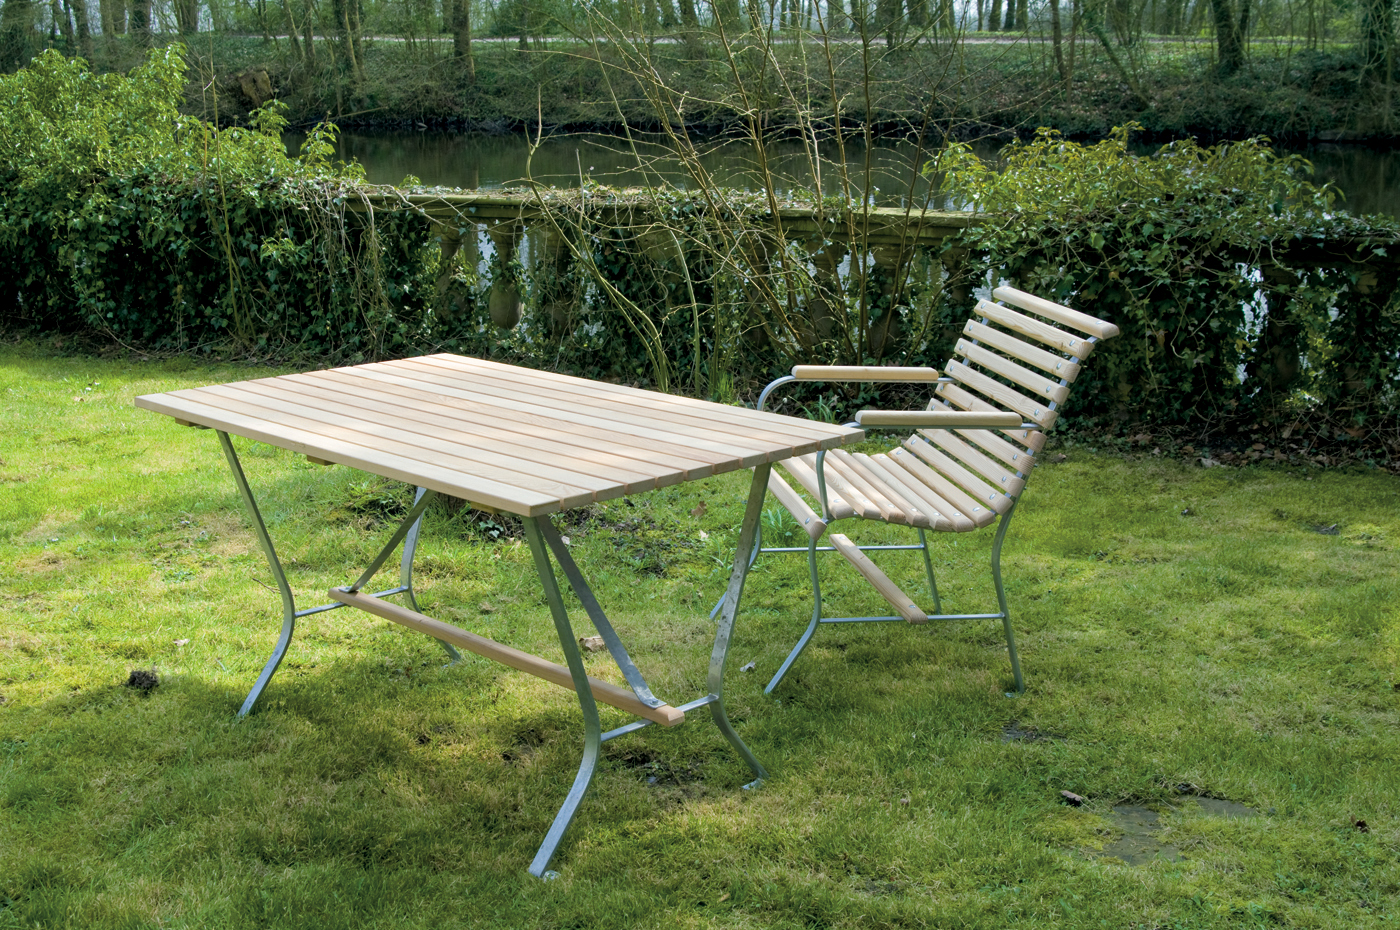 Draußen im einem Garten sieht man einen Tisch und einen Stuhl aus Holz. Im Hintergrund sieht man einen Fluss und eine große lange Hecke.